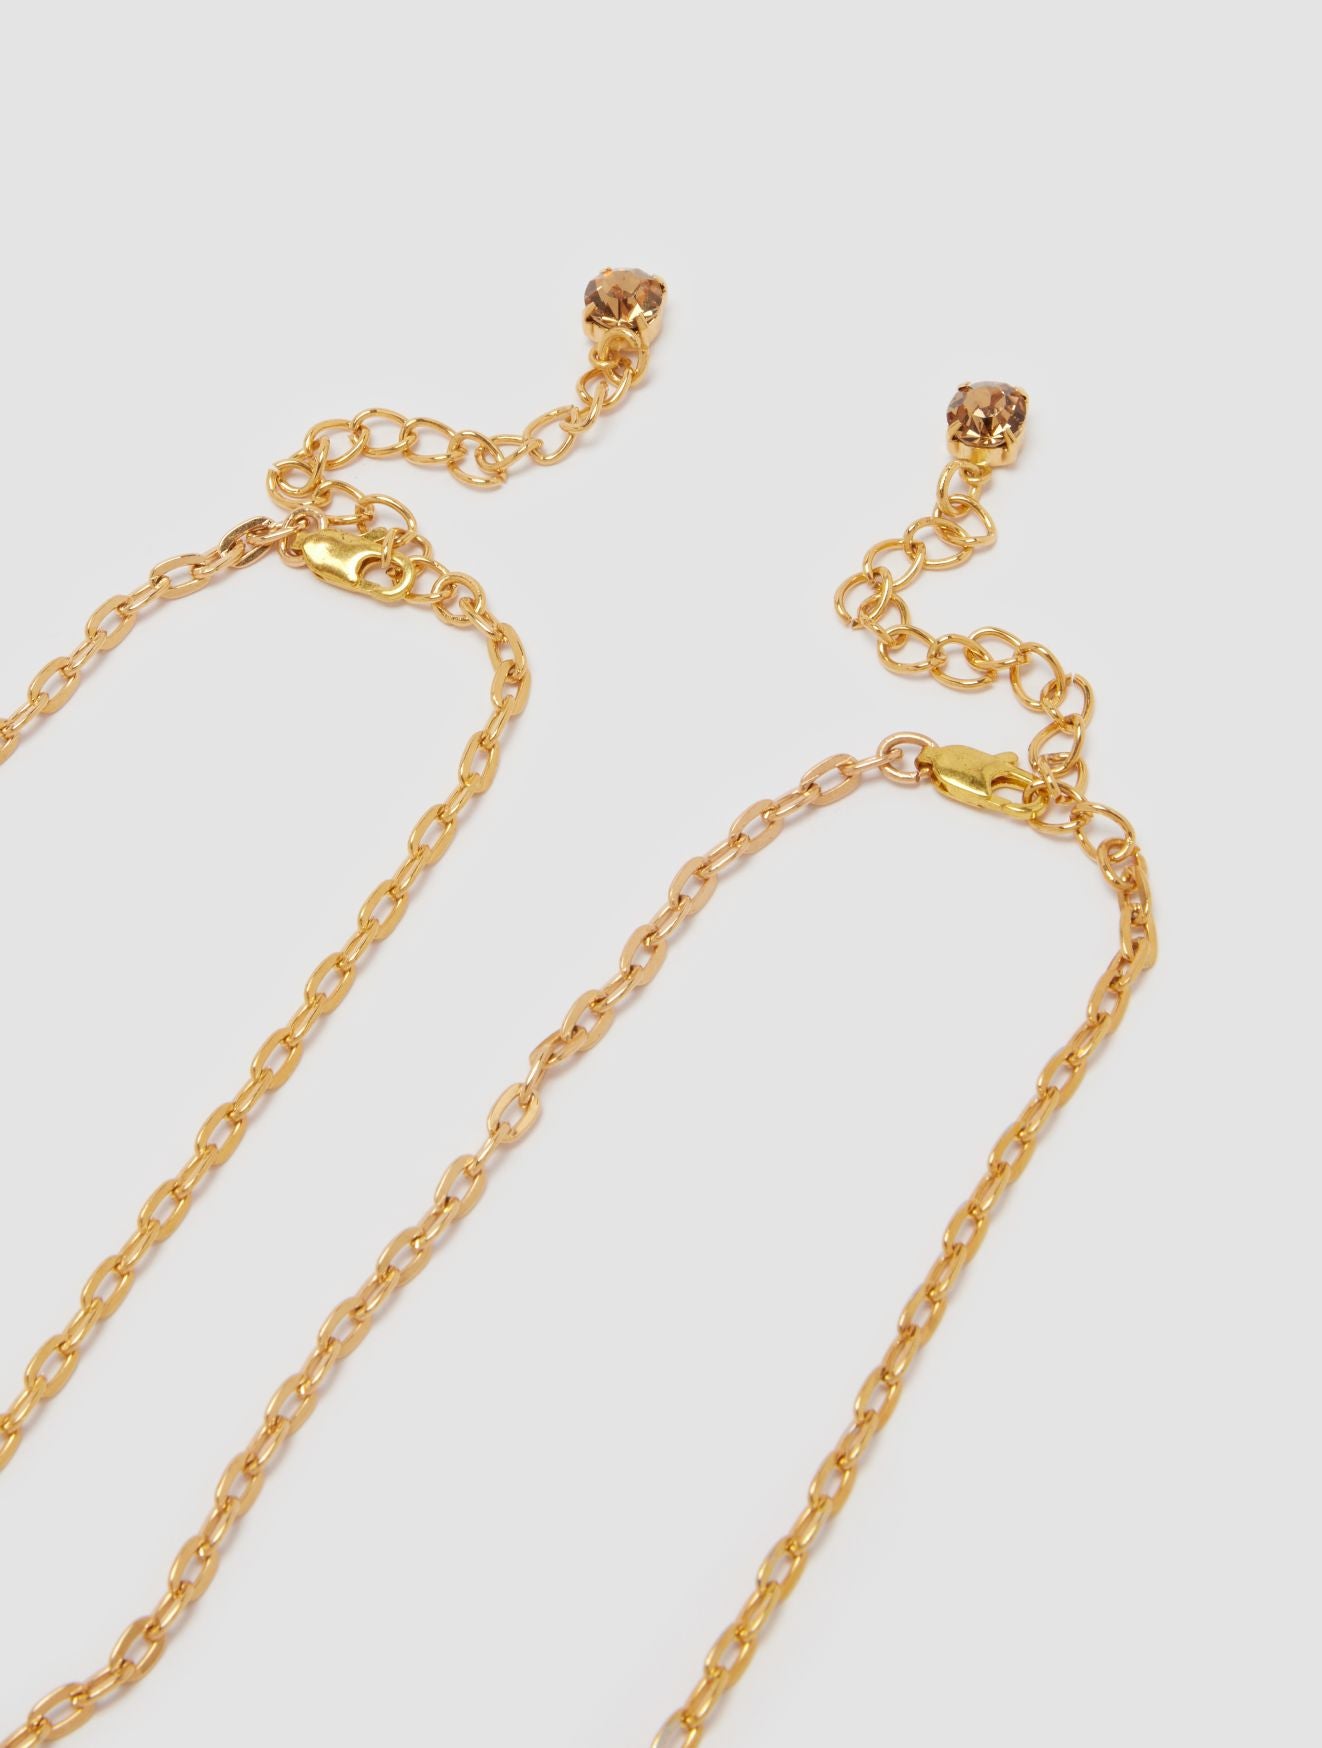 Hera Bra chain in Gold – Hayden